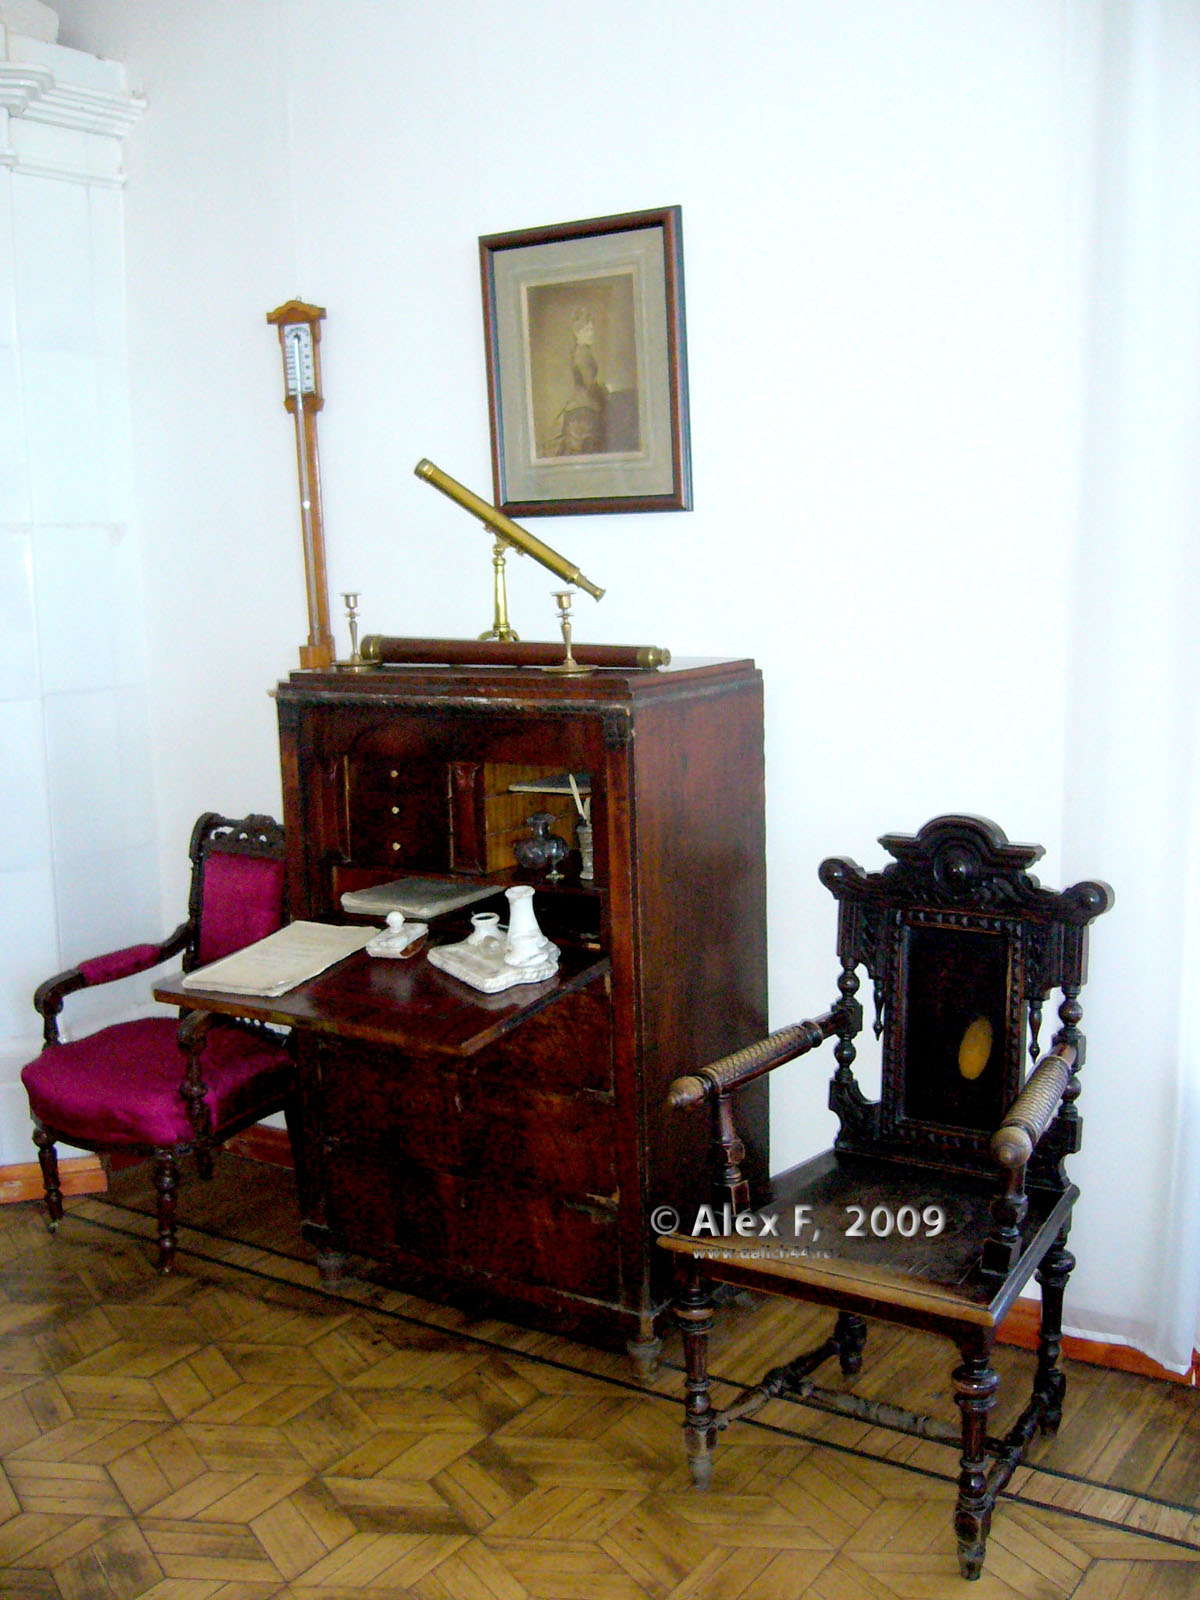 Галичский краеведческий музей